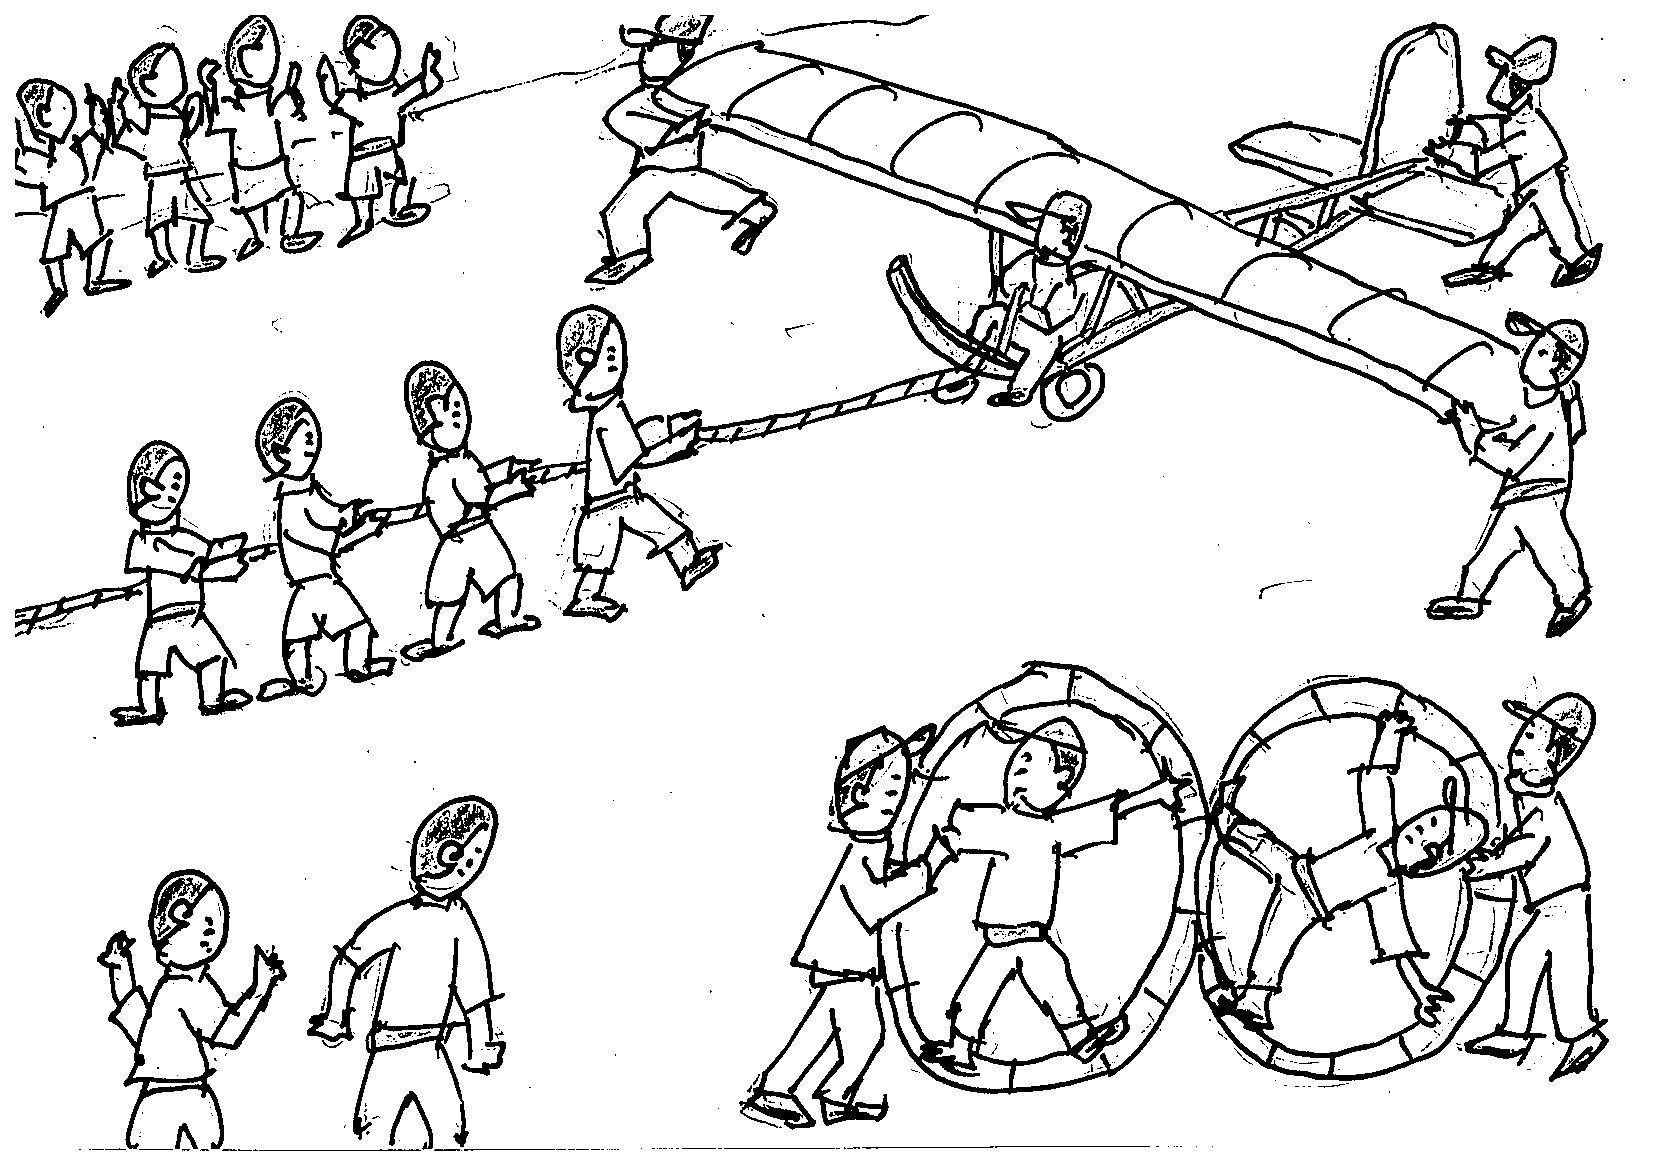 湯江小学校の運動場で動かされるグライダーと回転する大車輪の画像